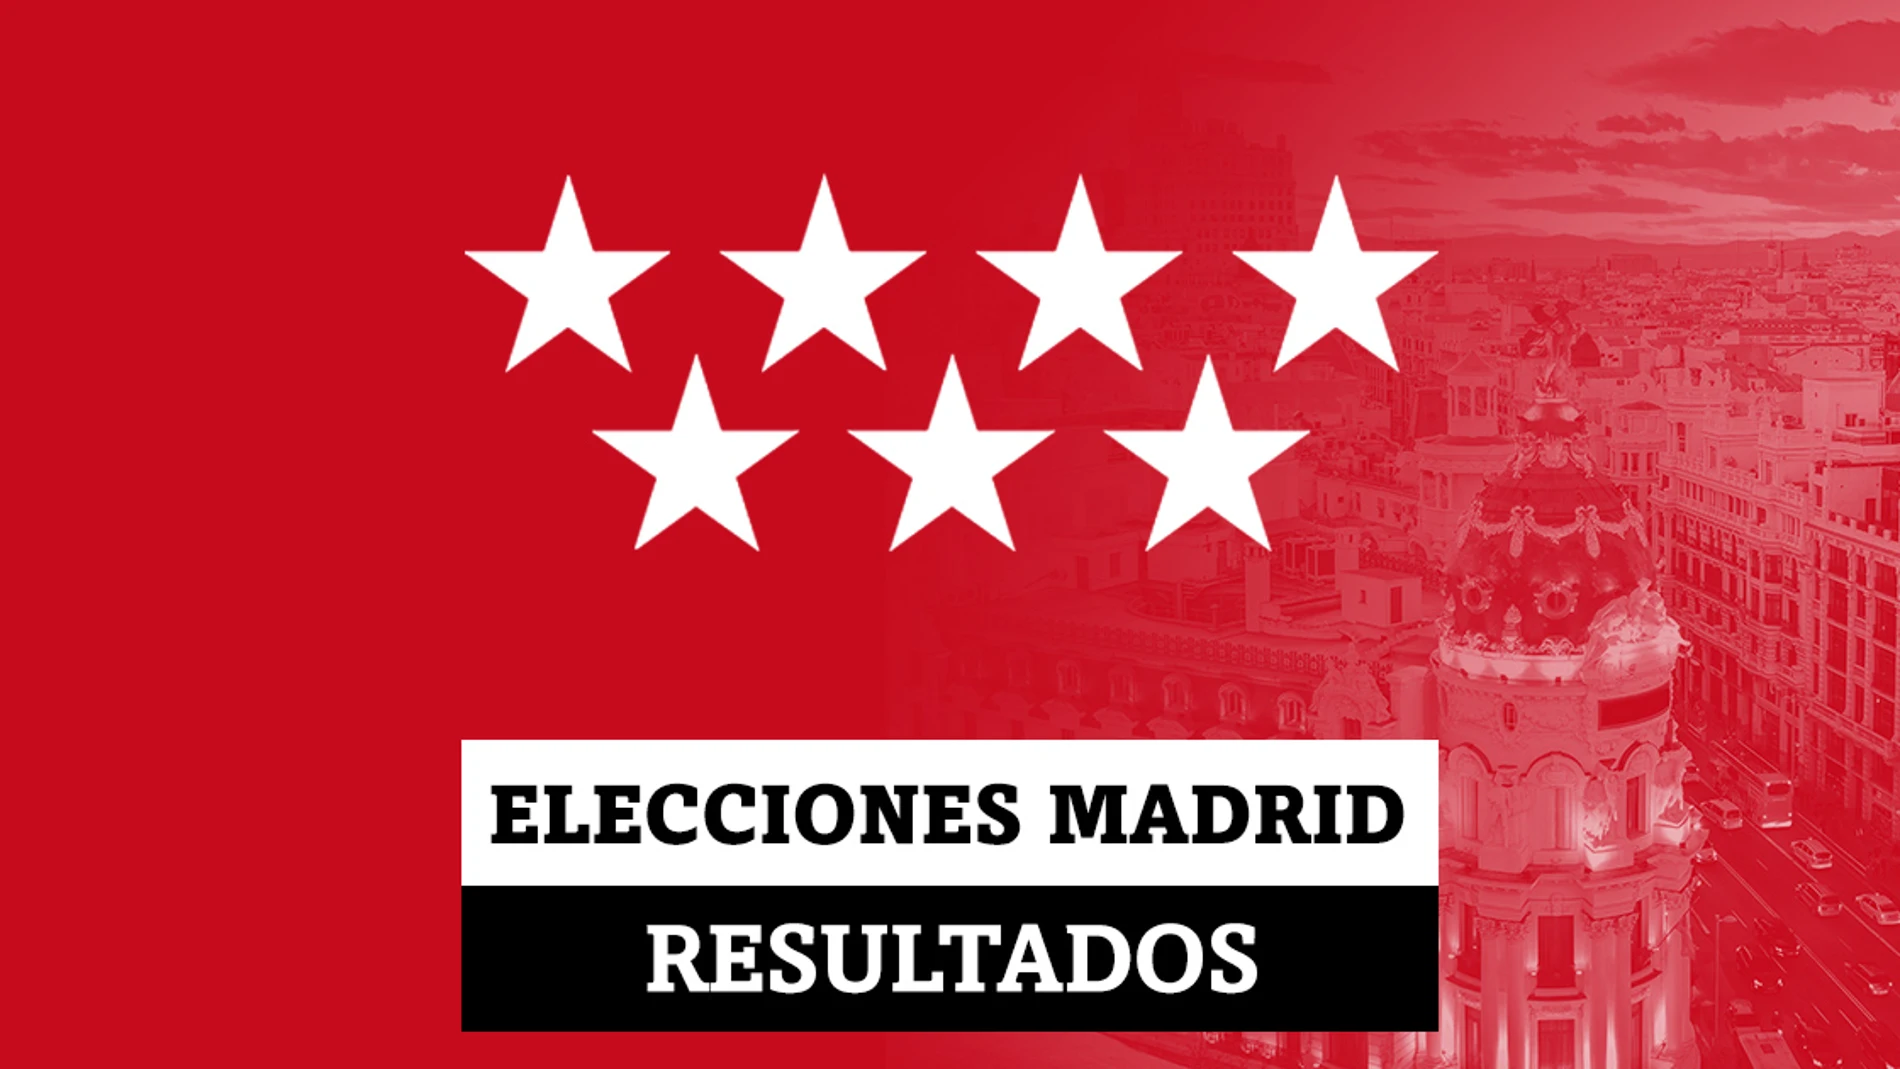 San Martín de la Vega | Resultados de las elecciones en Madrid